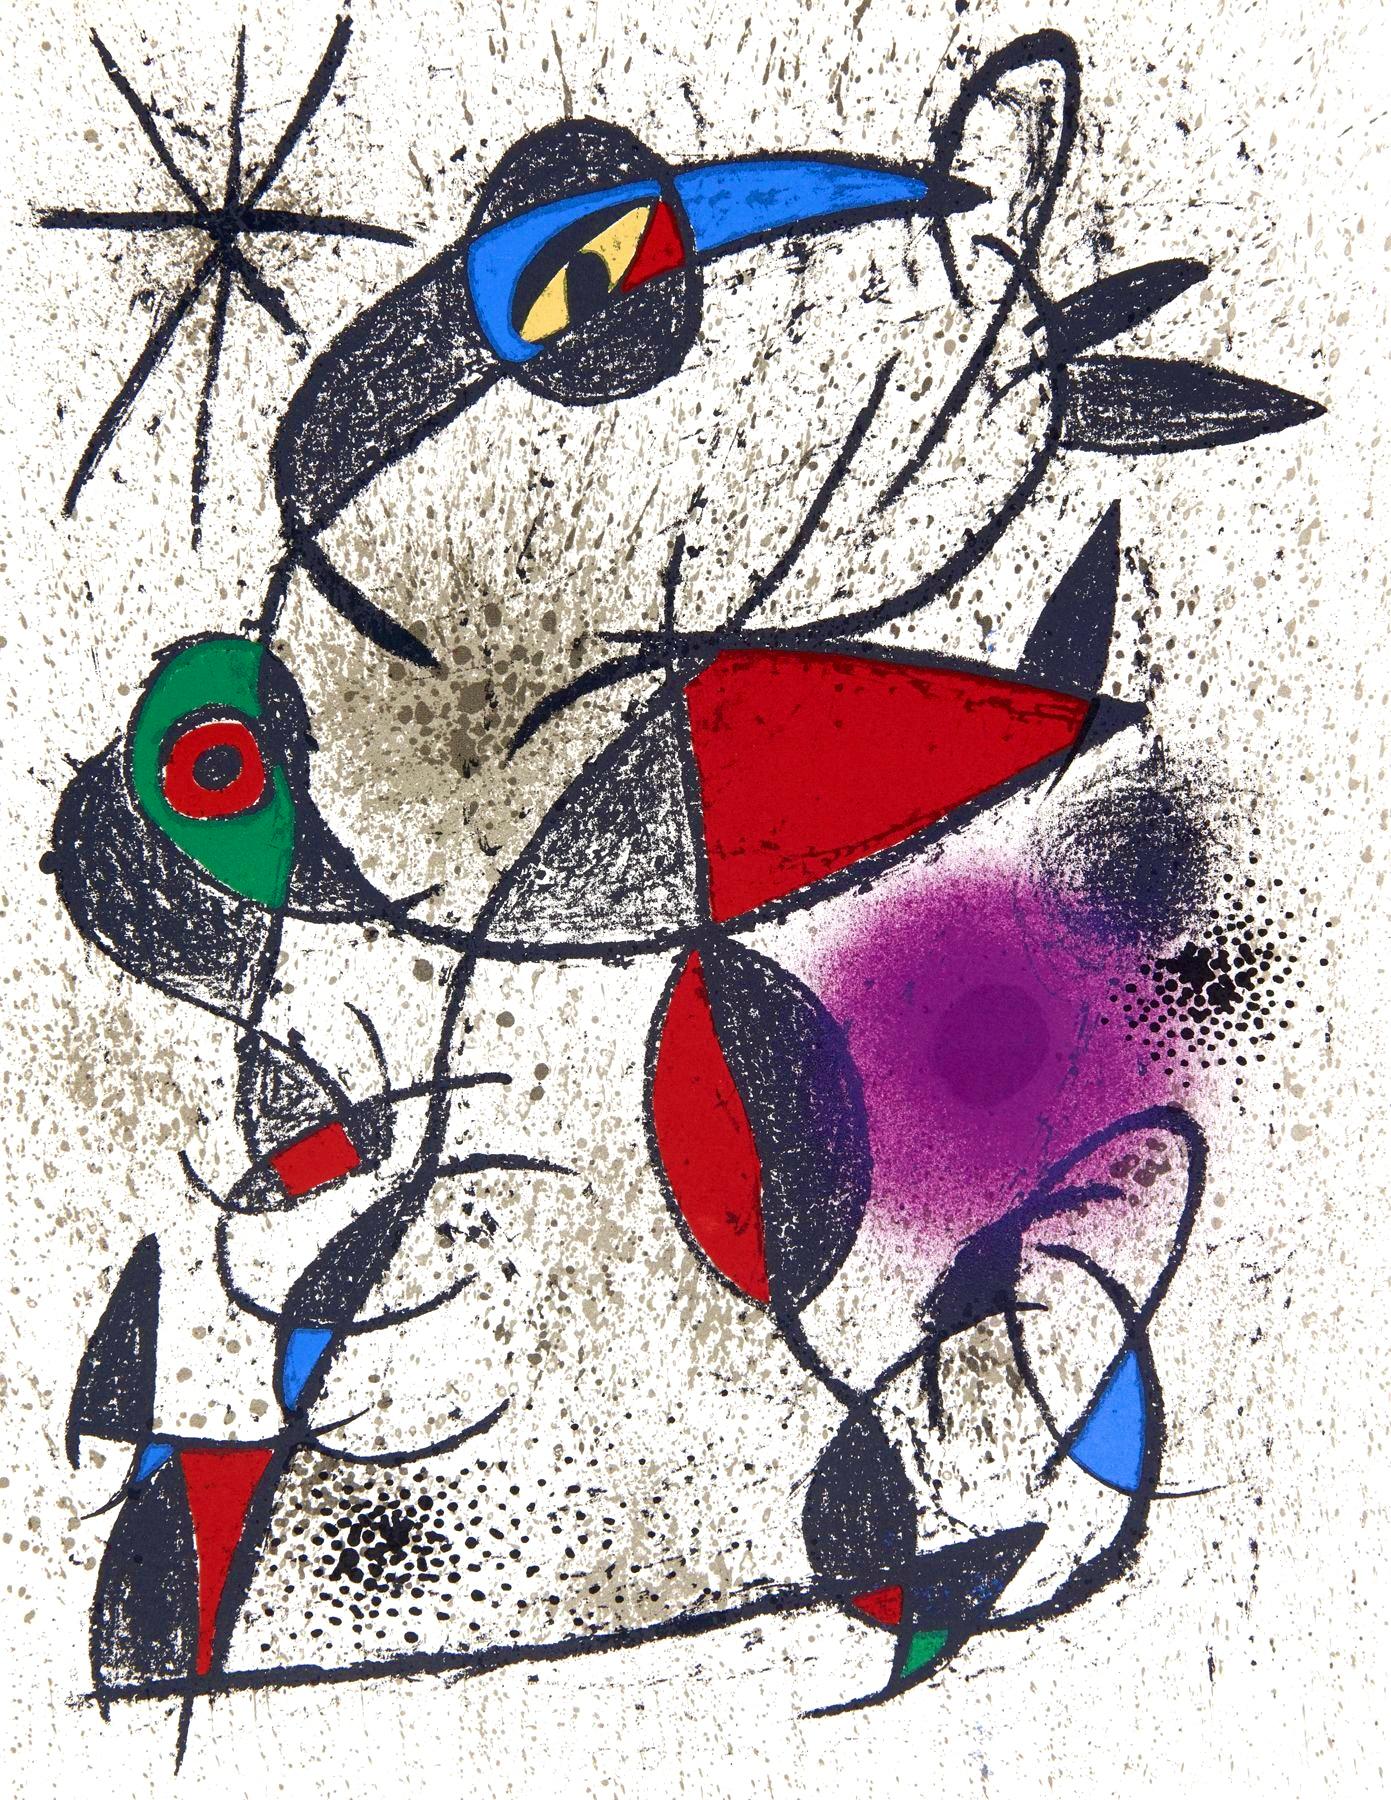 Joan Miró Abstract Print - Miró, Faillie du calcaire, Souvenirs et portraits d'artistes (after)